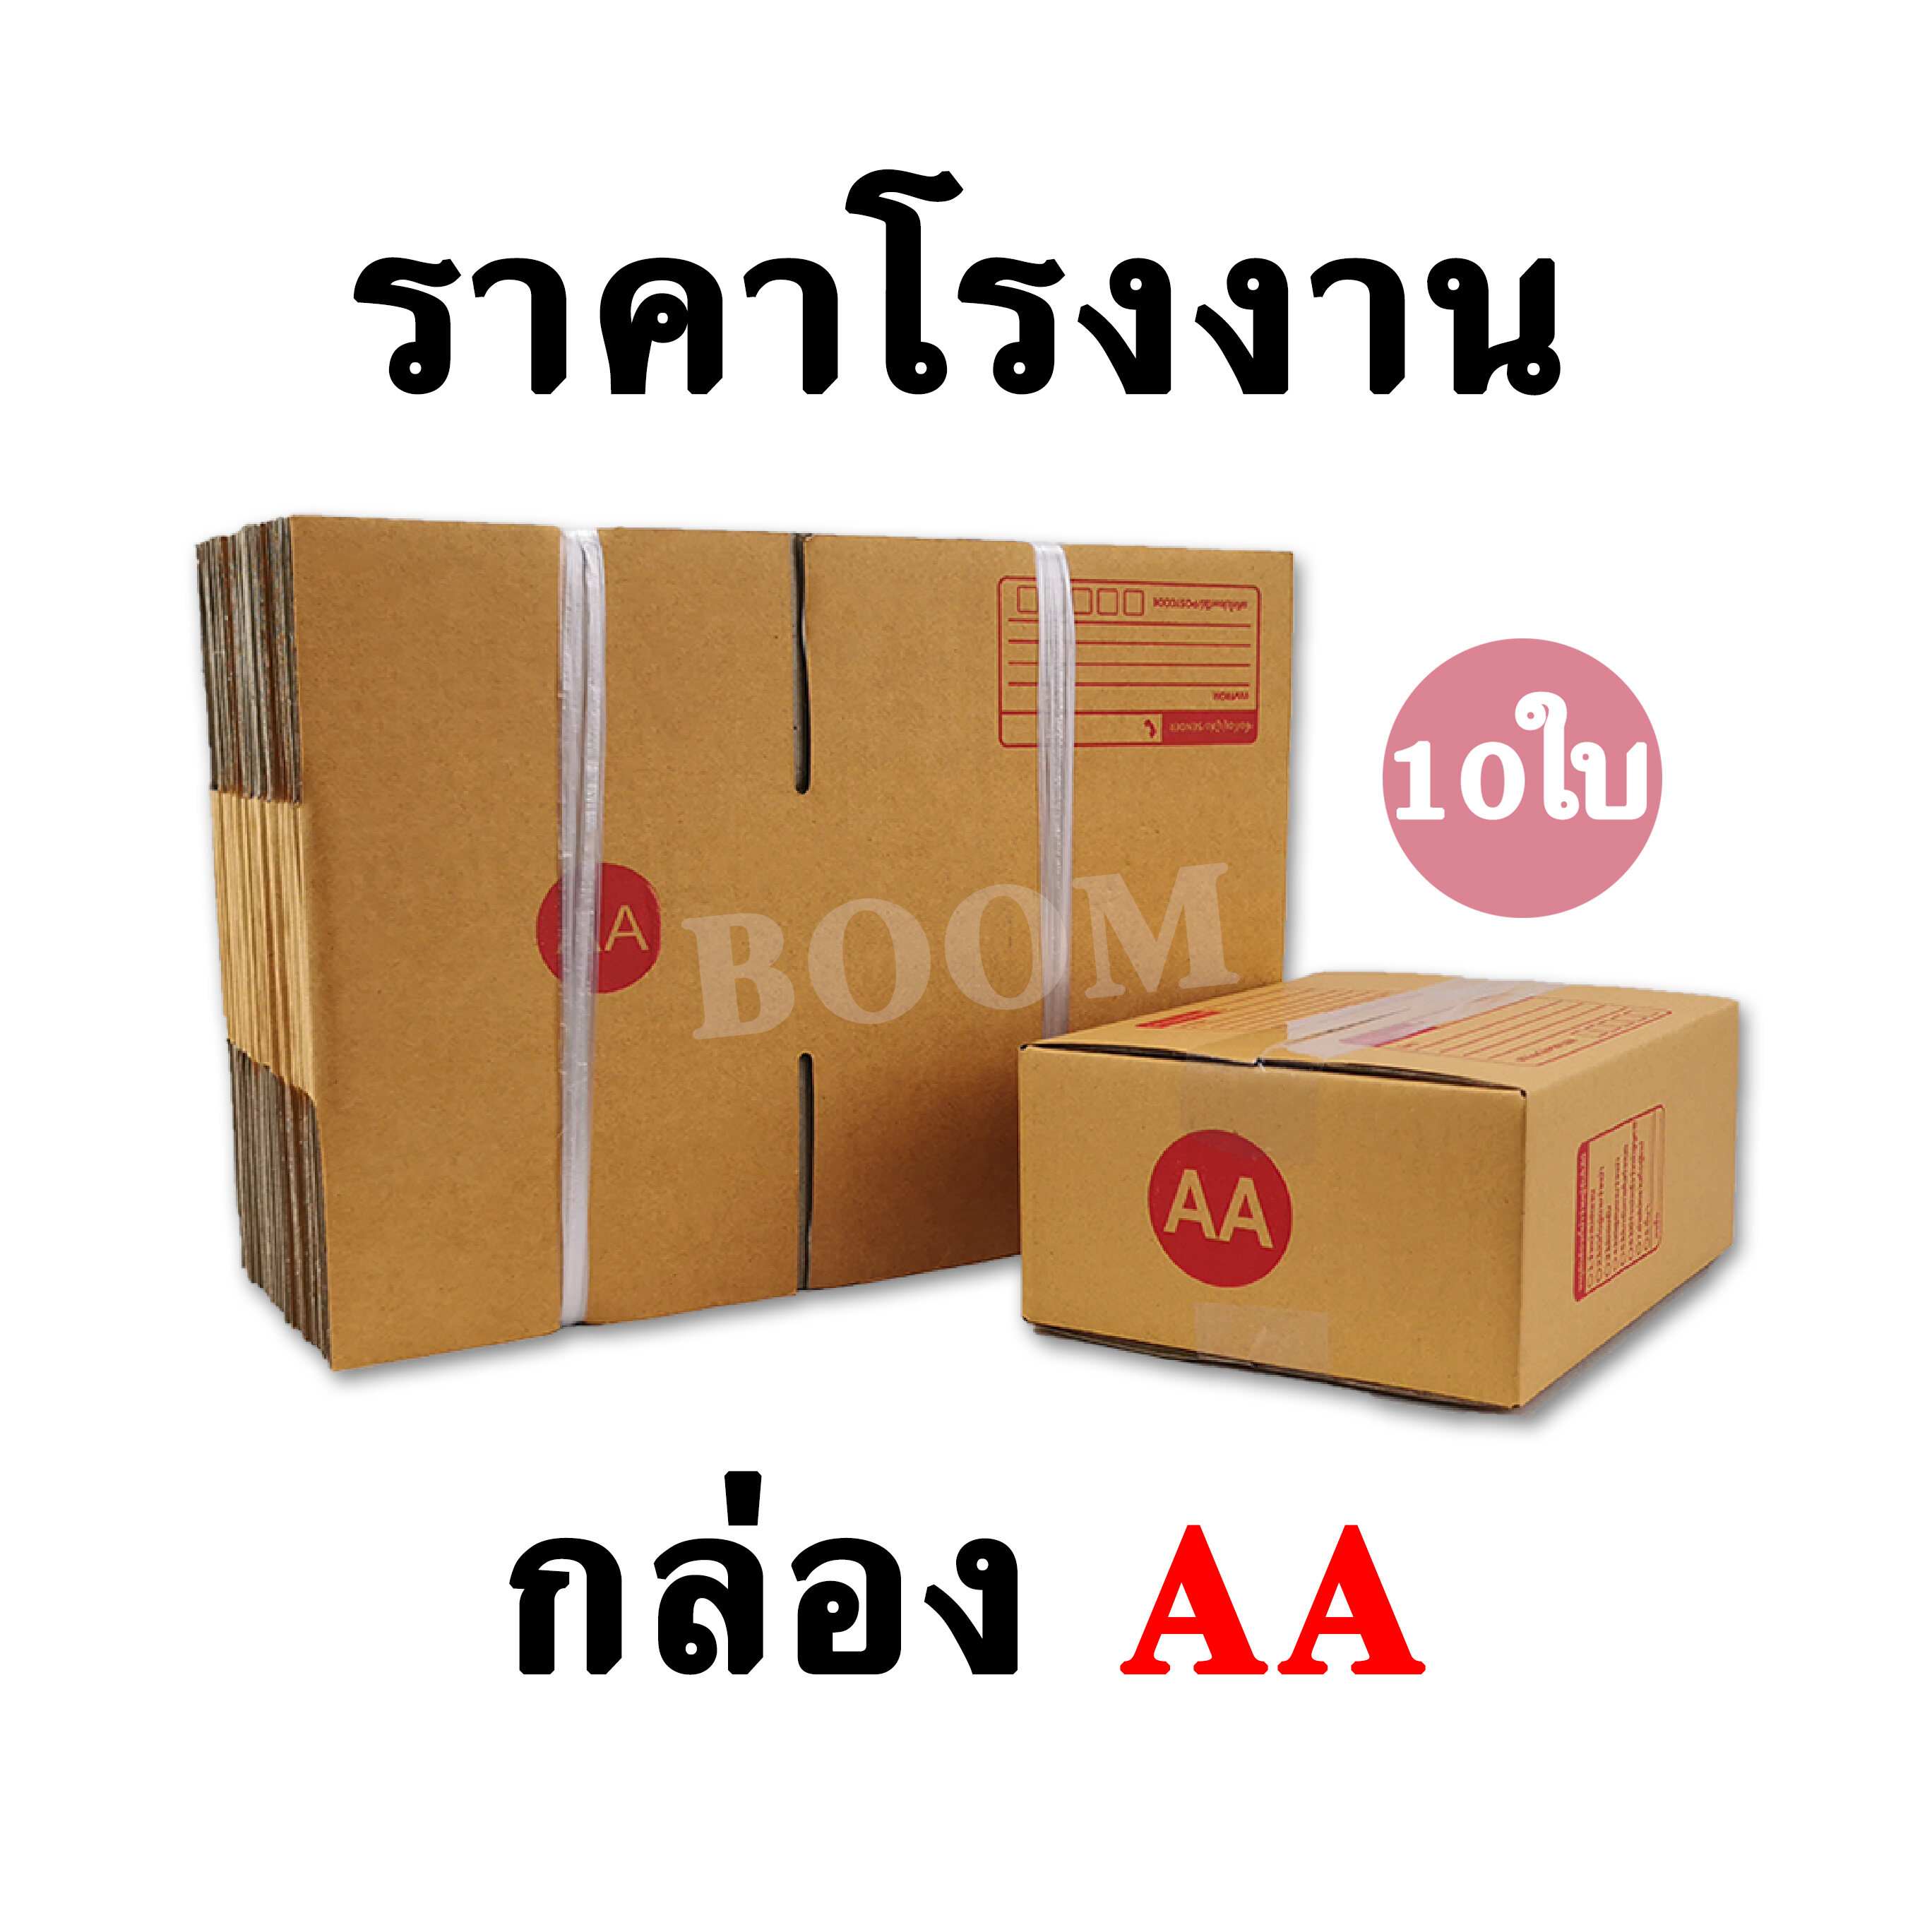 กล่องไปรษณีย์ กล่องพัสดุ AA (จำนวน 10ใบ) ขนาด 13 x 17 x 7 ซม.